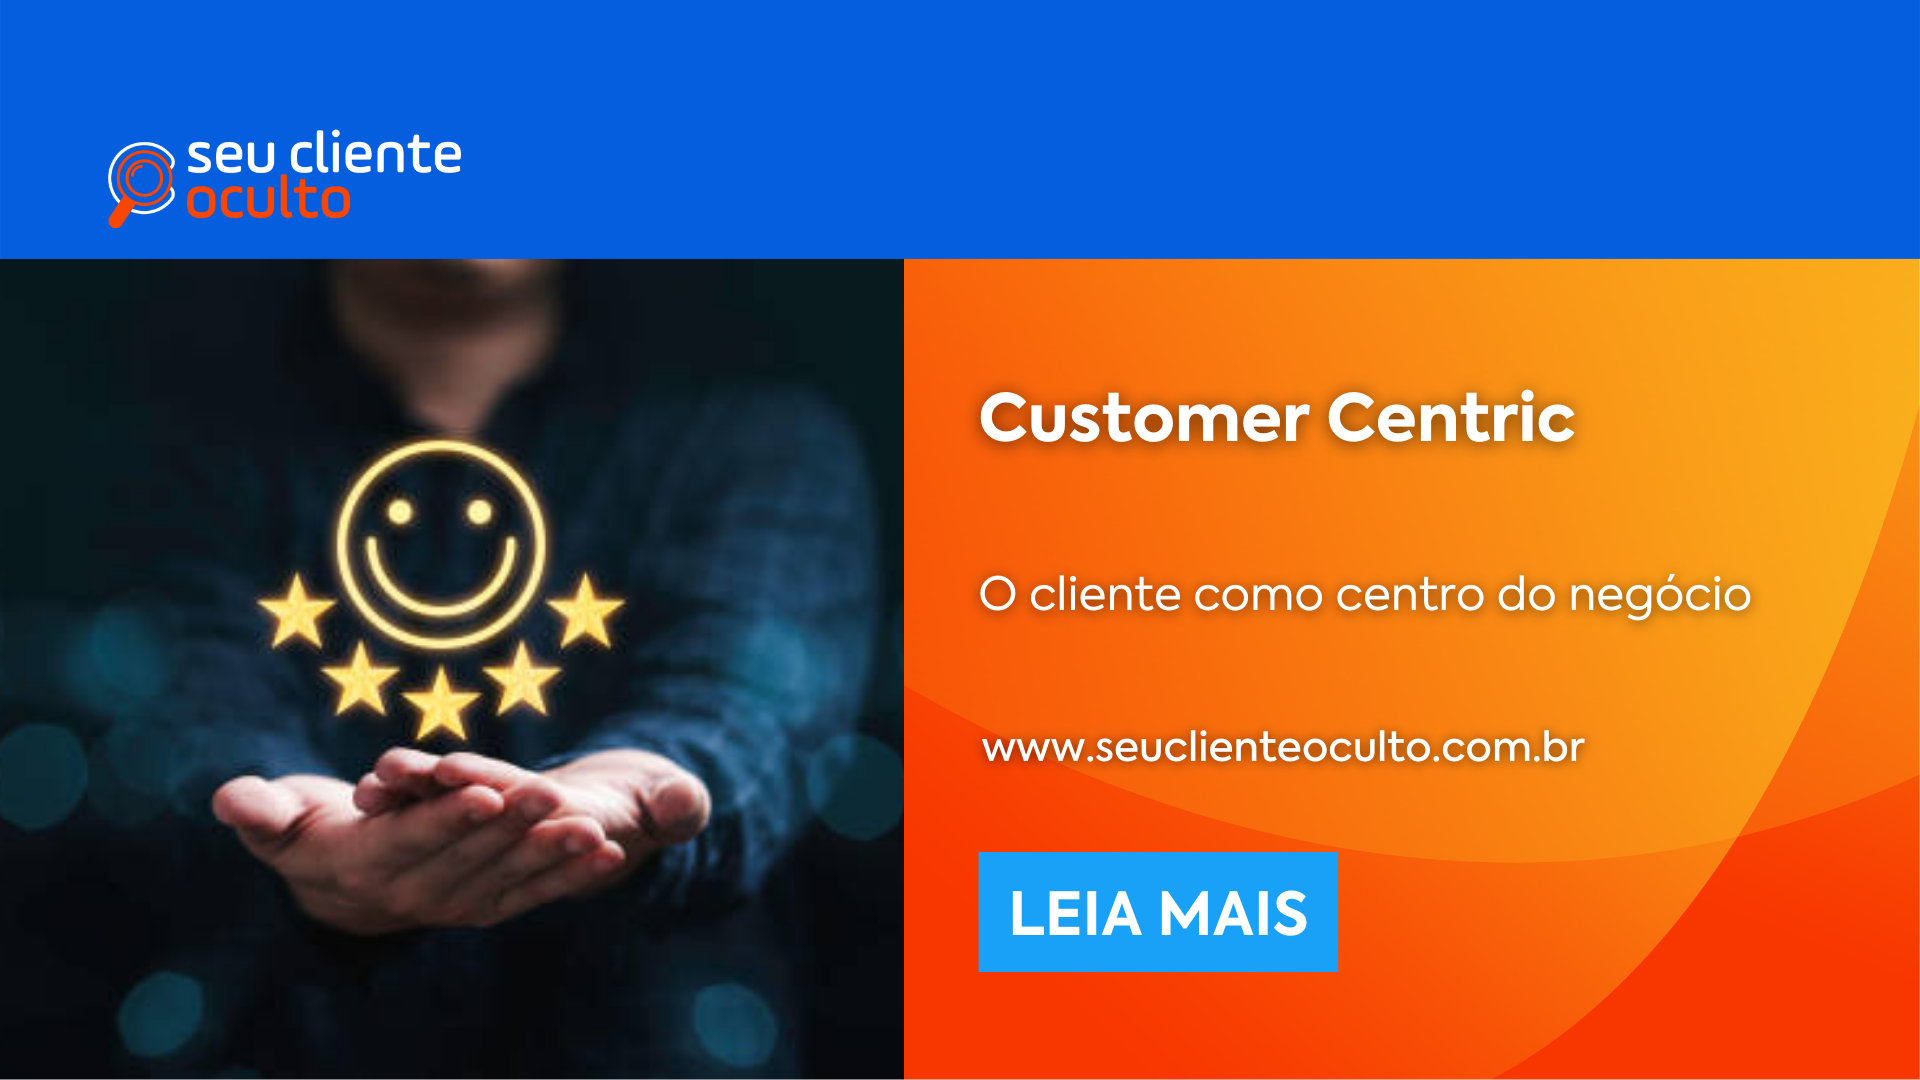 Customer Centric: O cliente como centro do negócio